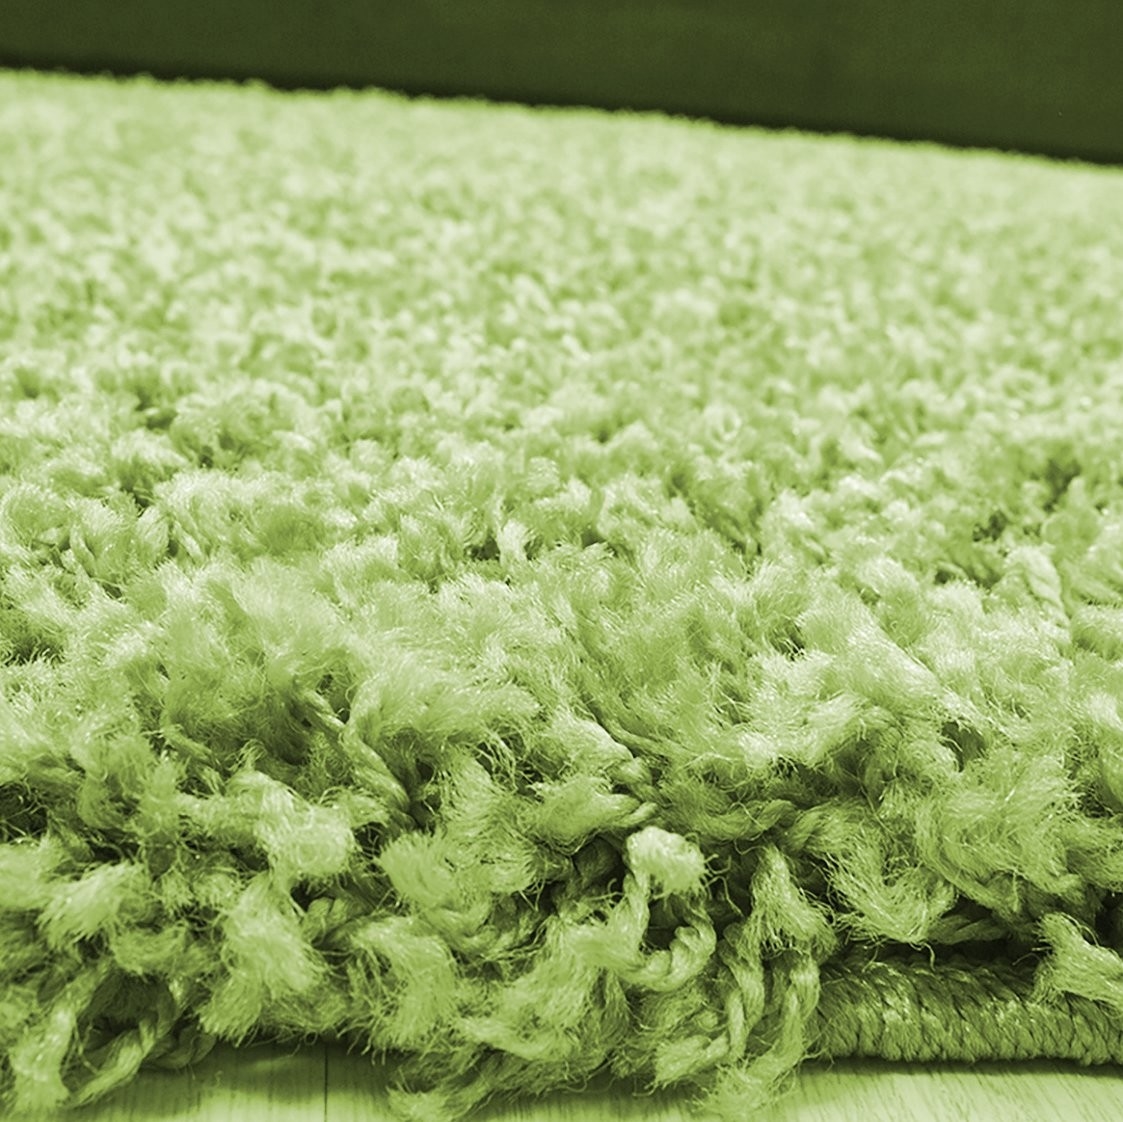 Afm Geurig Beïnvloeden Groen vloerkleed hoogpolig | Karpetten | Lage prijs! - vloerkleeddiscounter